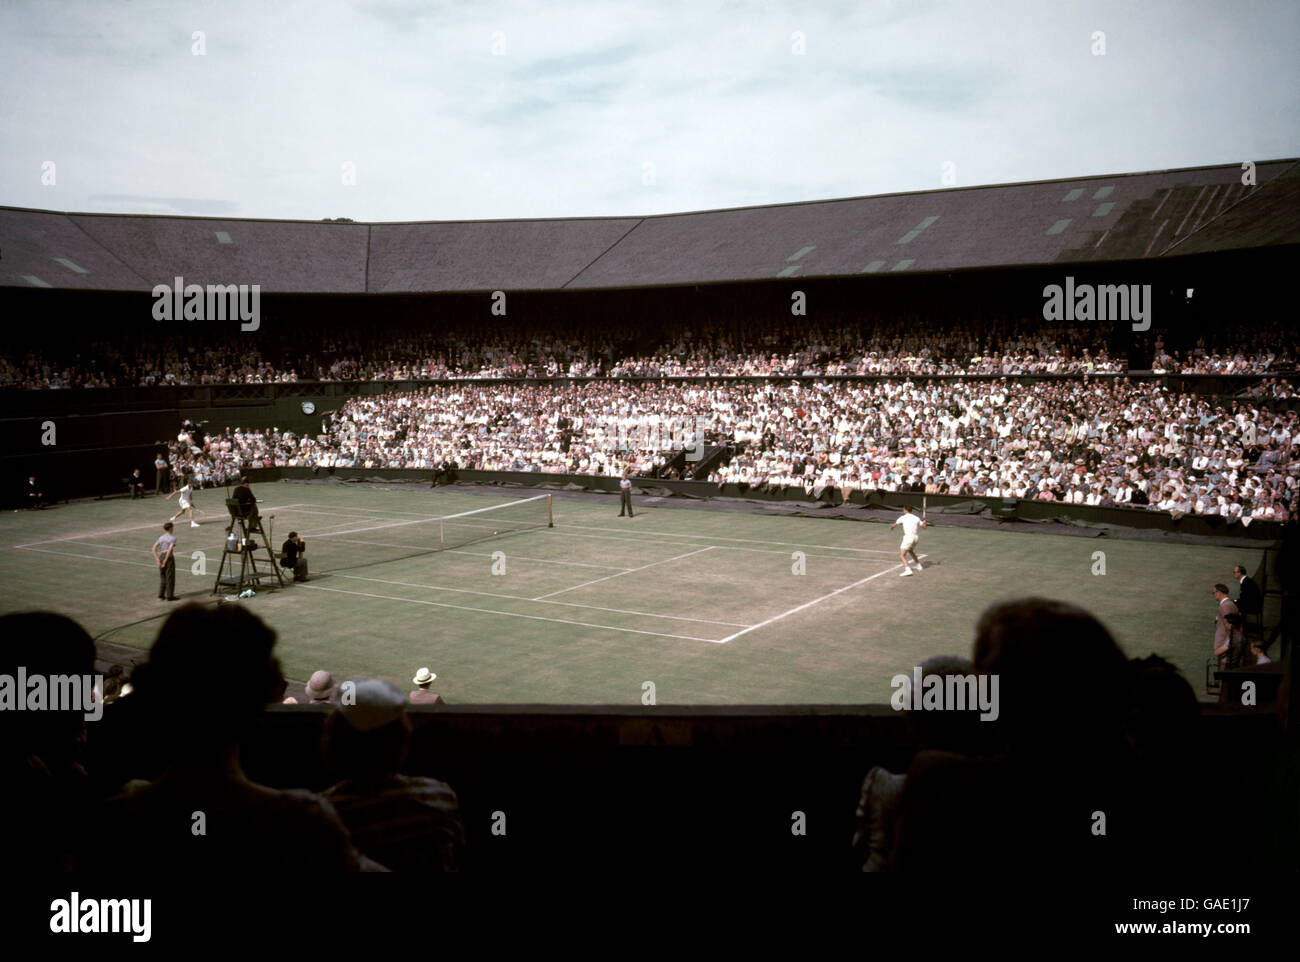 Tennis - Championnat de Wimbledon.Vue générale du jeu sur le court du centre pendant les championnats de tennis de Wimbledon. Banque D'Images